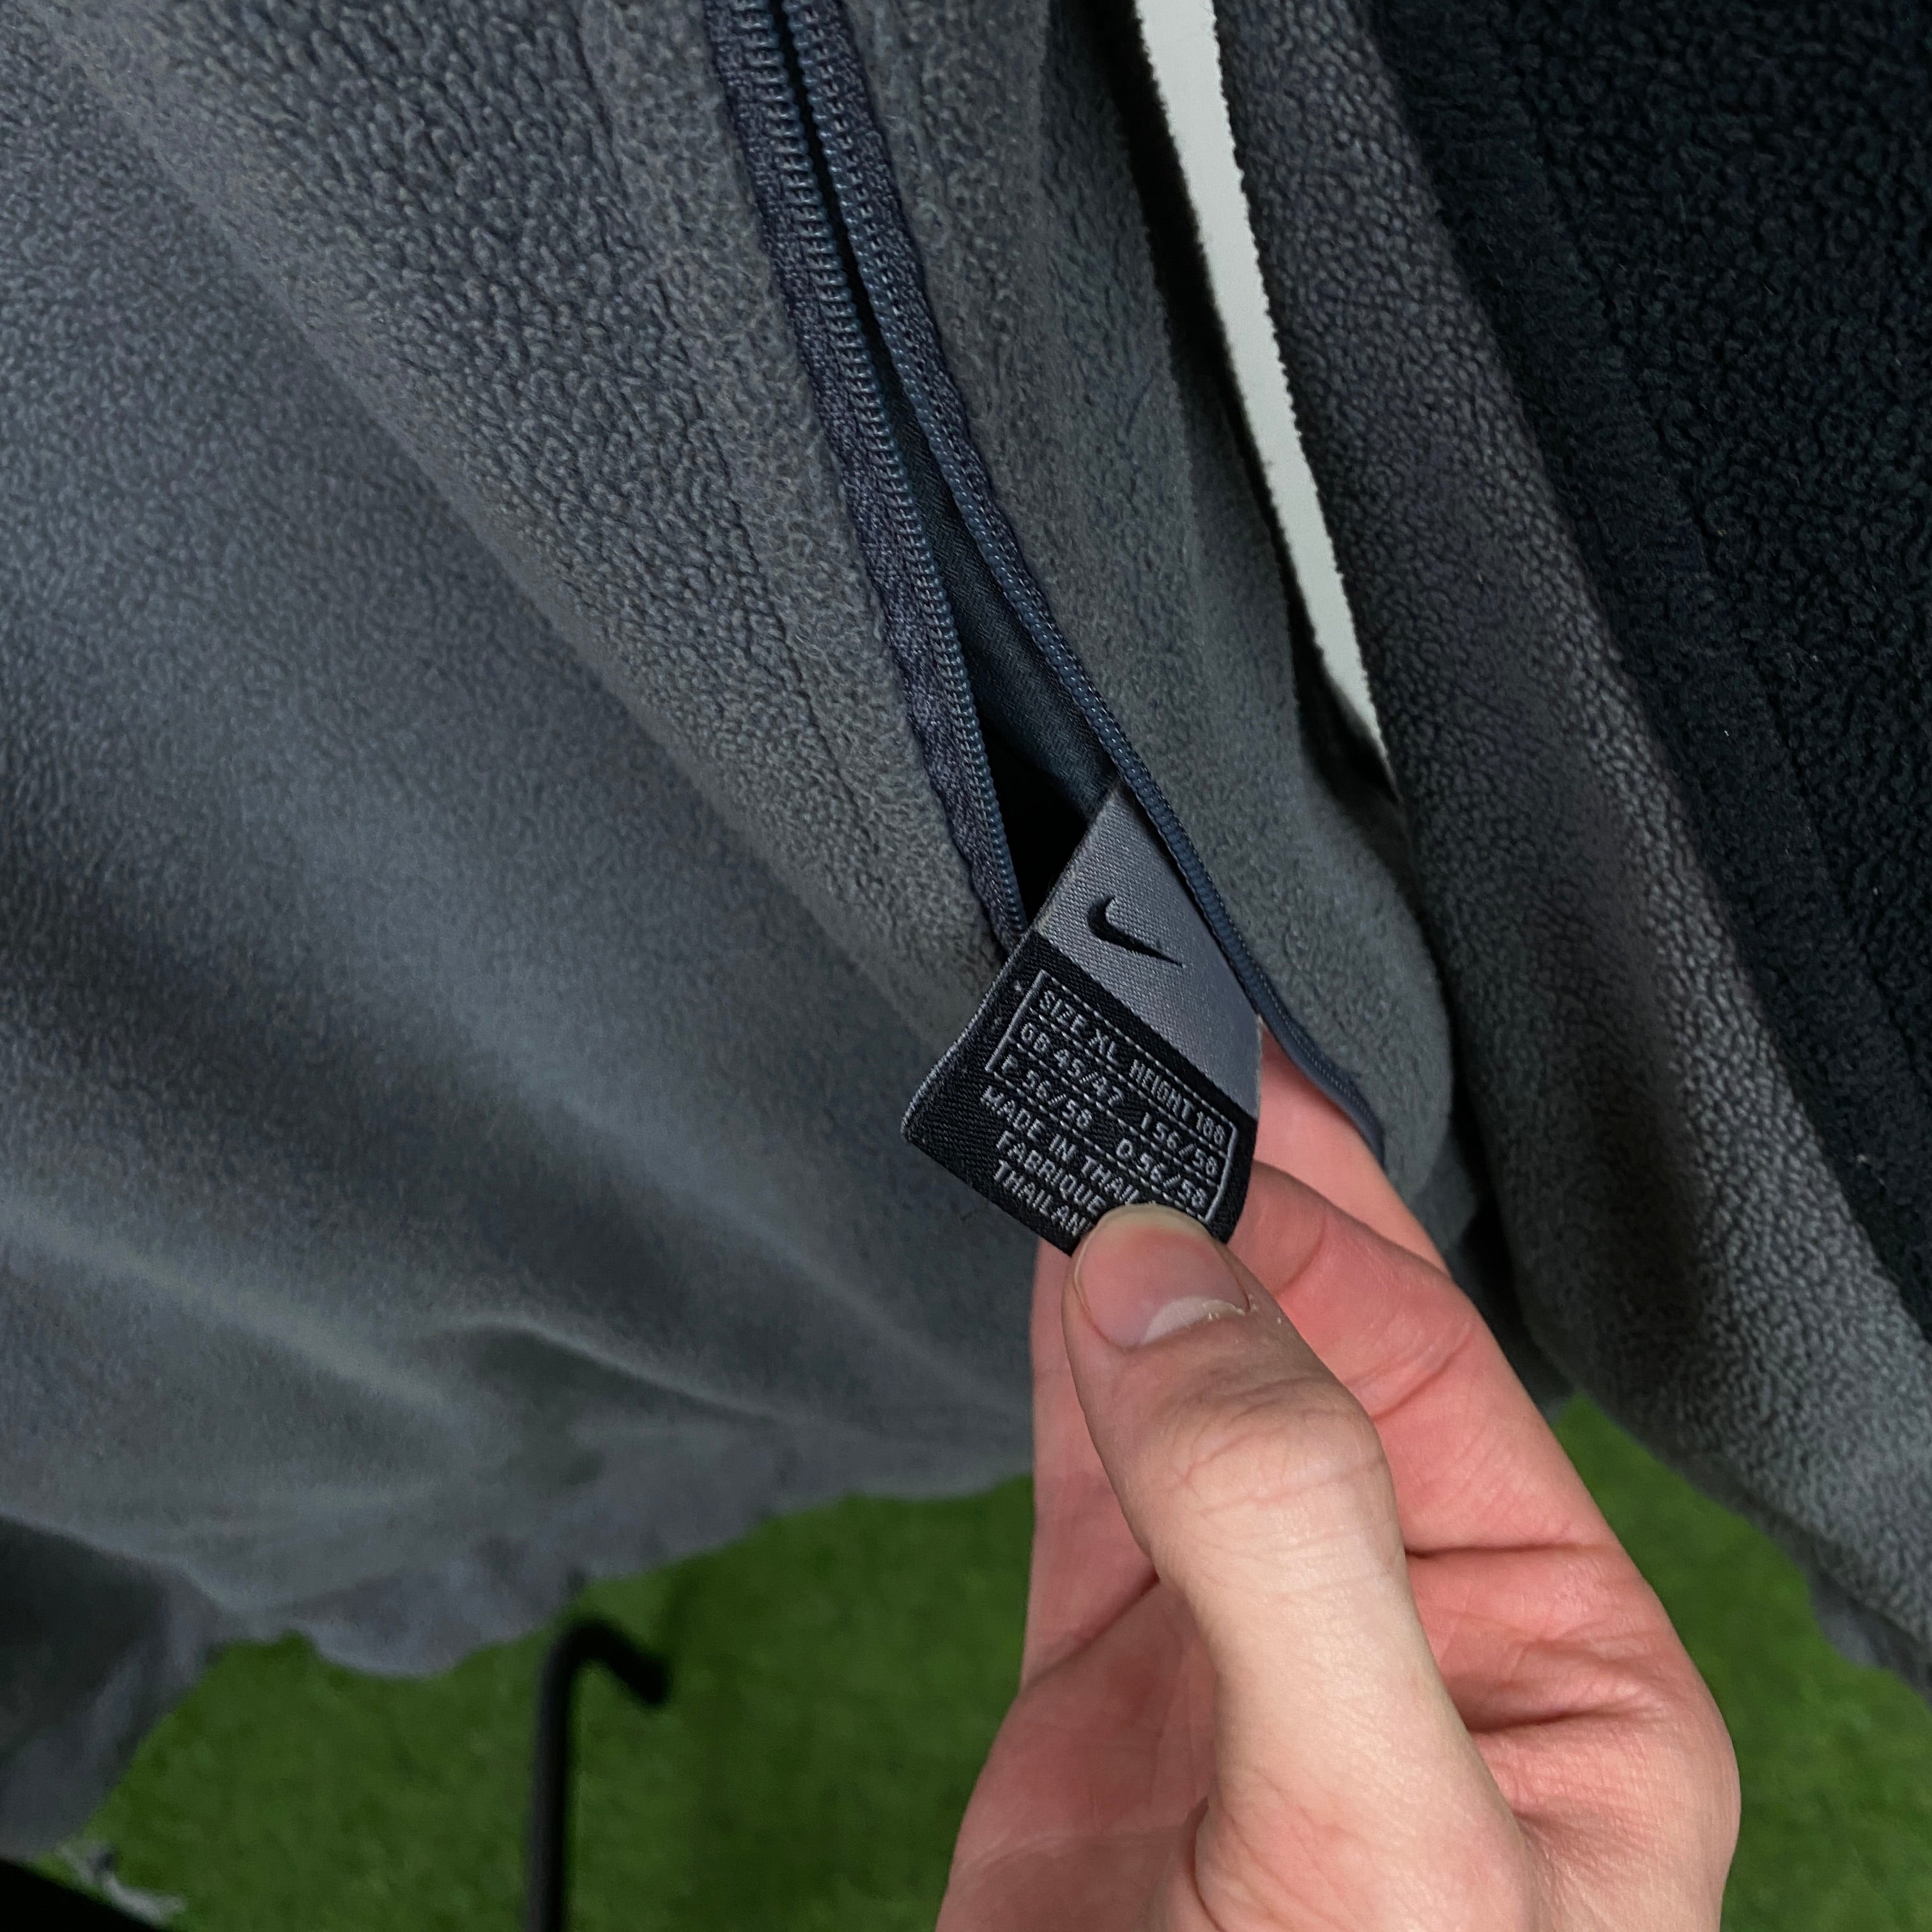 90s Nike Hex Reversible Fleece Coat Jacket Black Grey XL